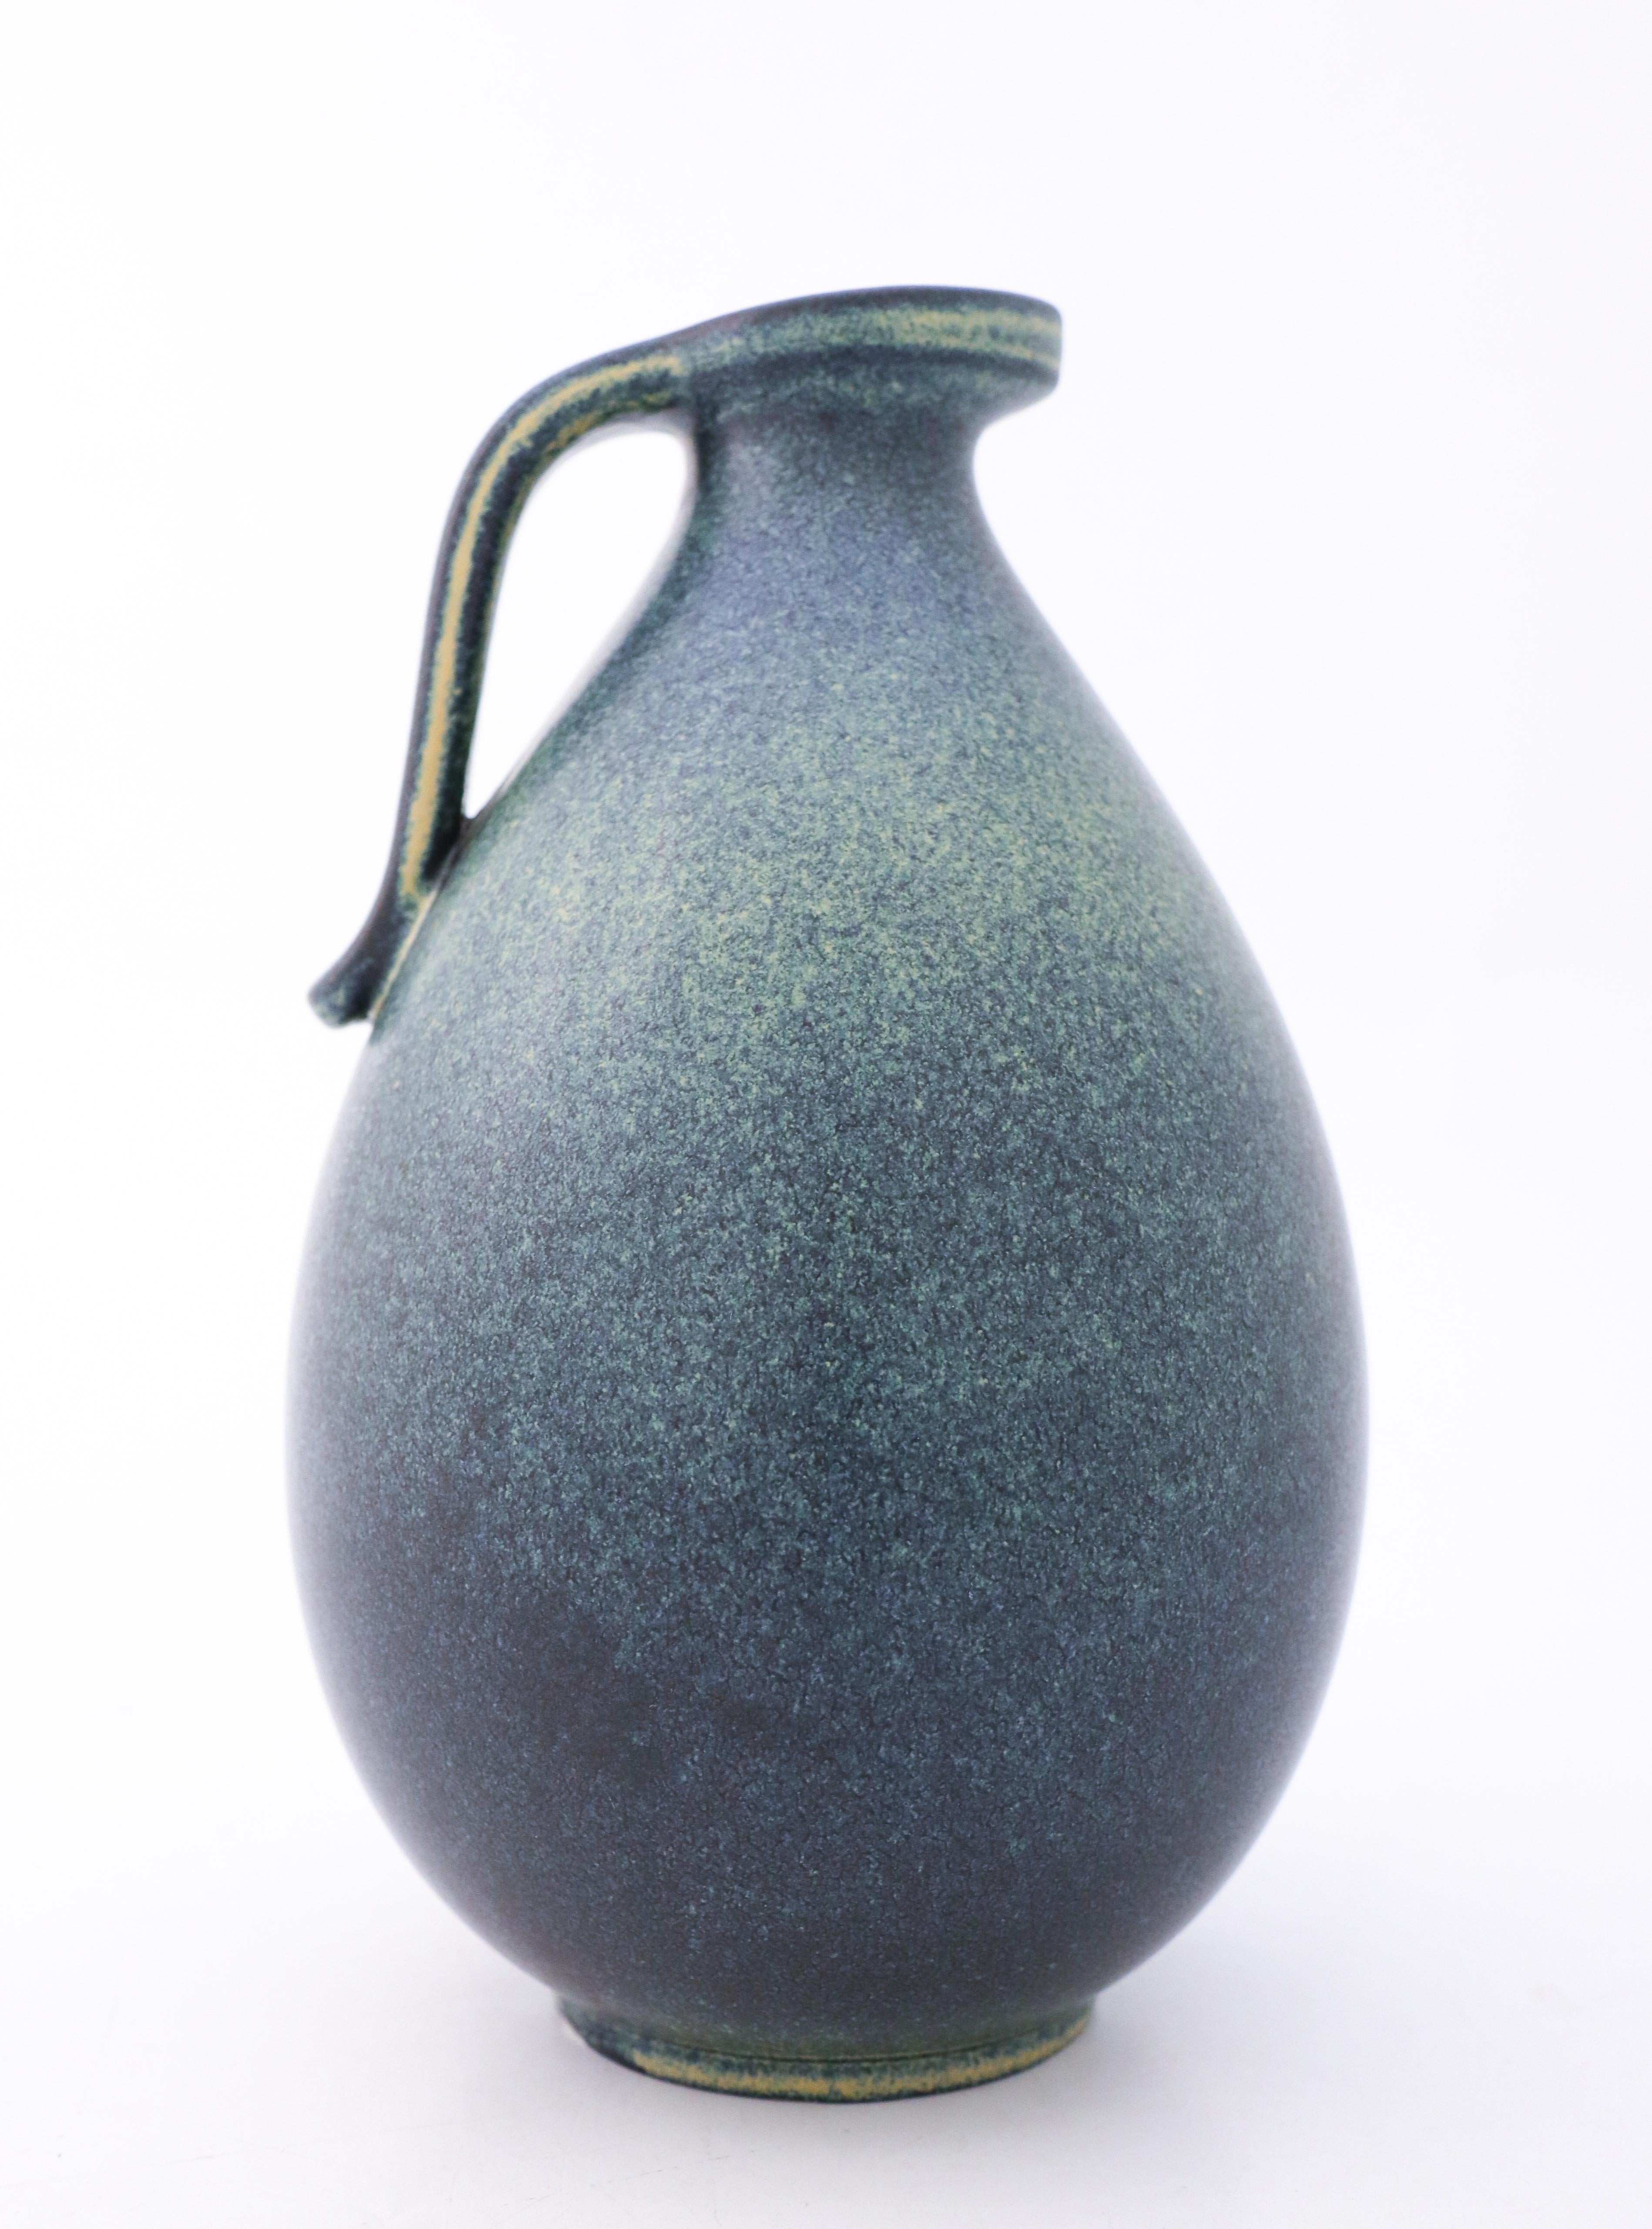 Un vase bleu avec une belle glaçure, conçu par Gunnar Nylund à Rörstrand, d'une hauteur de 24,5 cm (9,8). Il est en excellent état, à l'exception de quelques marques mineures dans la glaçure, et est marqué comme étant de première qualité. 

Gunnar